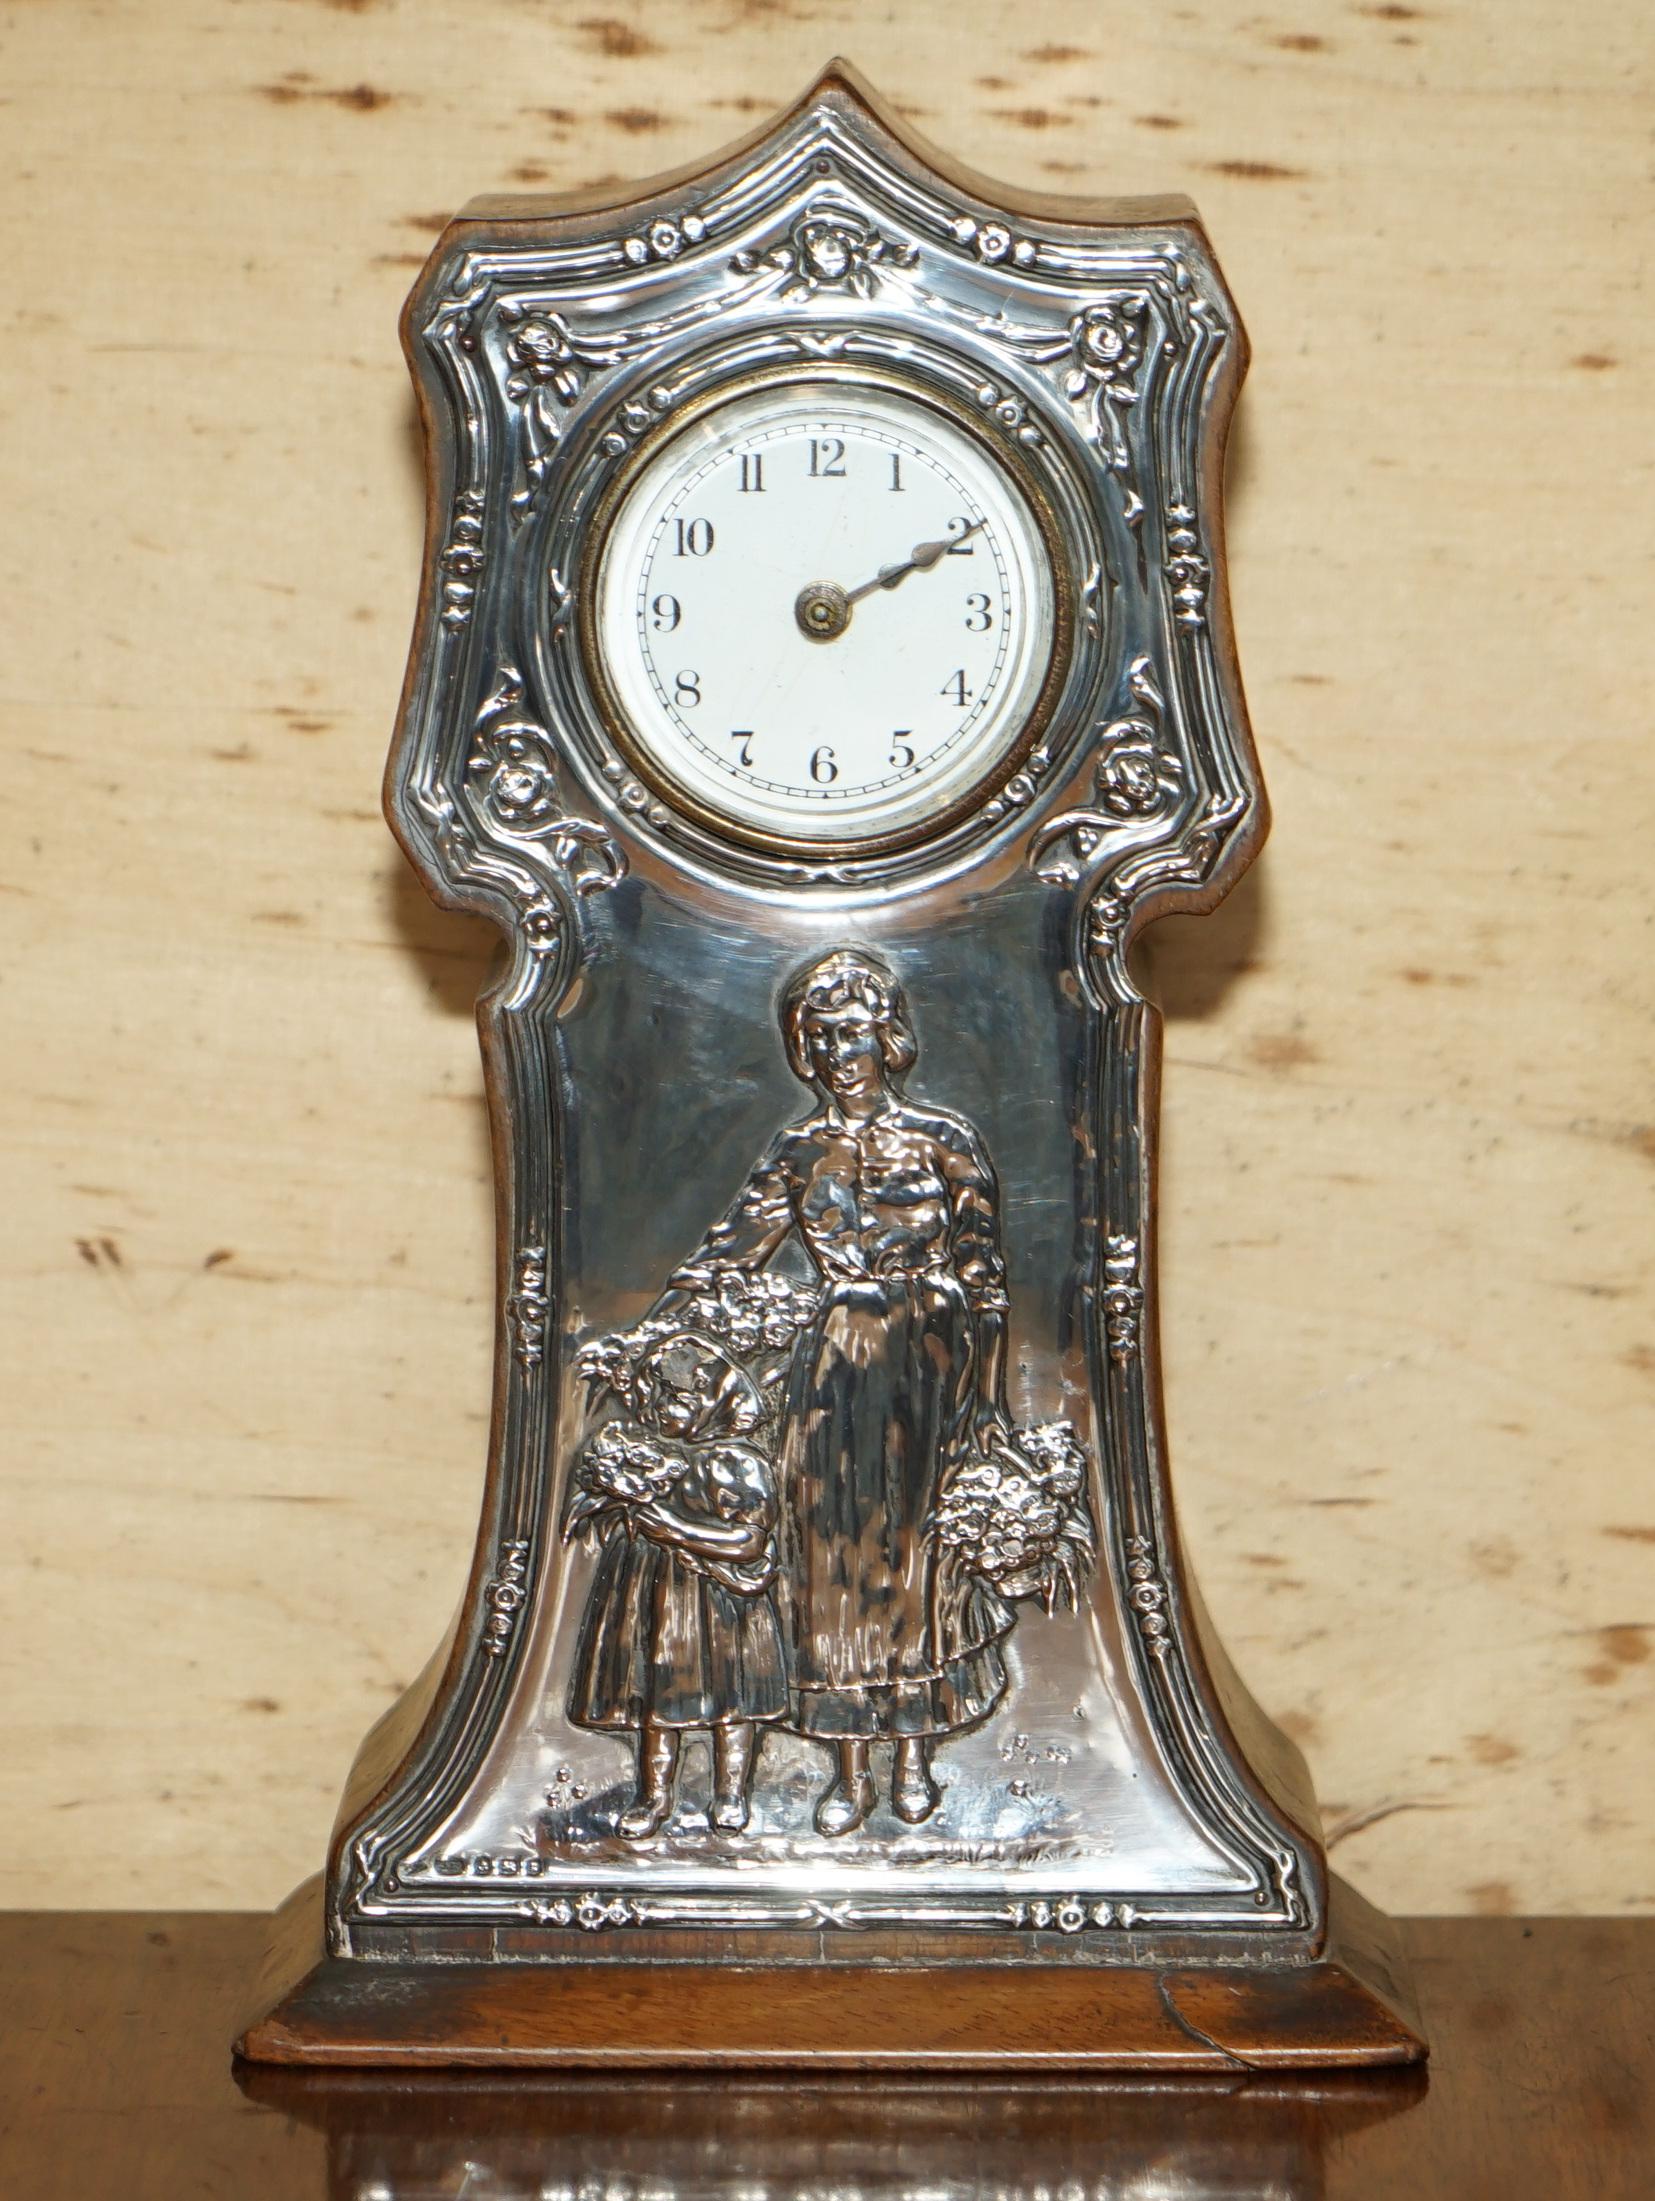 Wir freuen uns, zum Verkauf dieser voll gepunzt 1906 Birmingham gemacht Sterling Silber Mantel Uhr Darstellung und Mutter und Kind bieten

Diese Uhr ist in absolutem Originalzustand, abgesehen von etwas Silberpolitur ist sie unangetastet. Sie